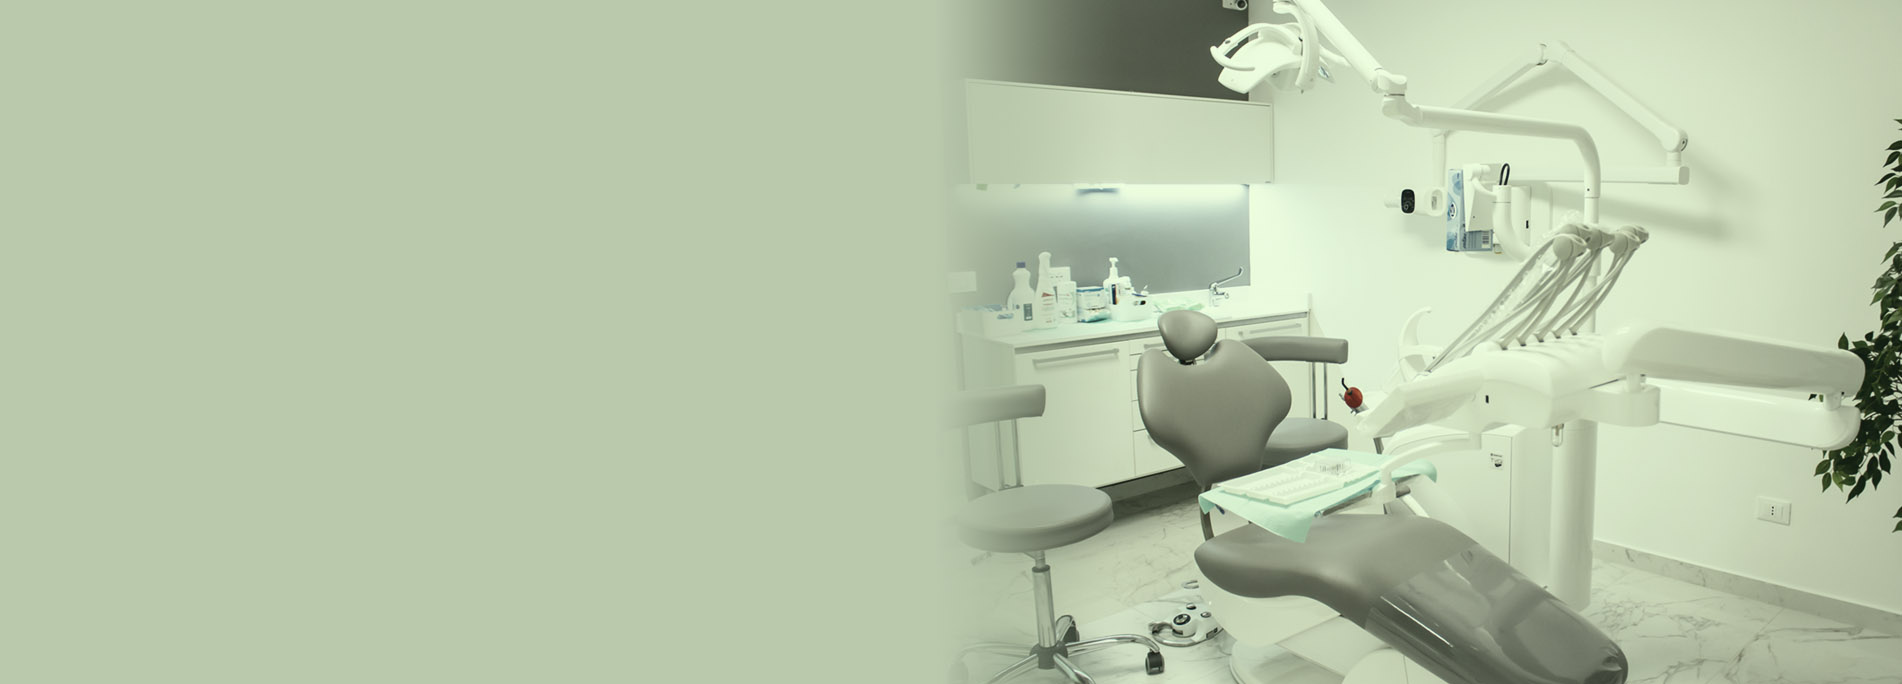 Studio Dentistico Lionti-hero3a